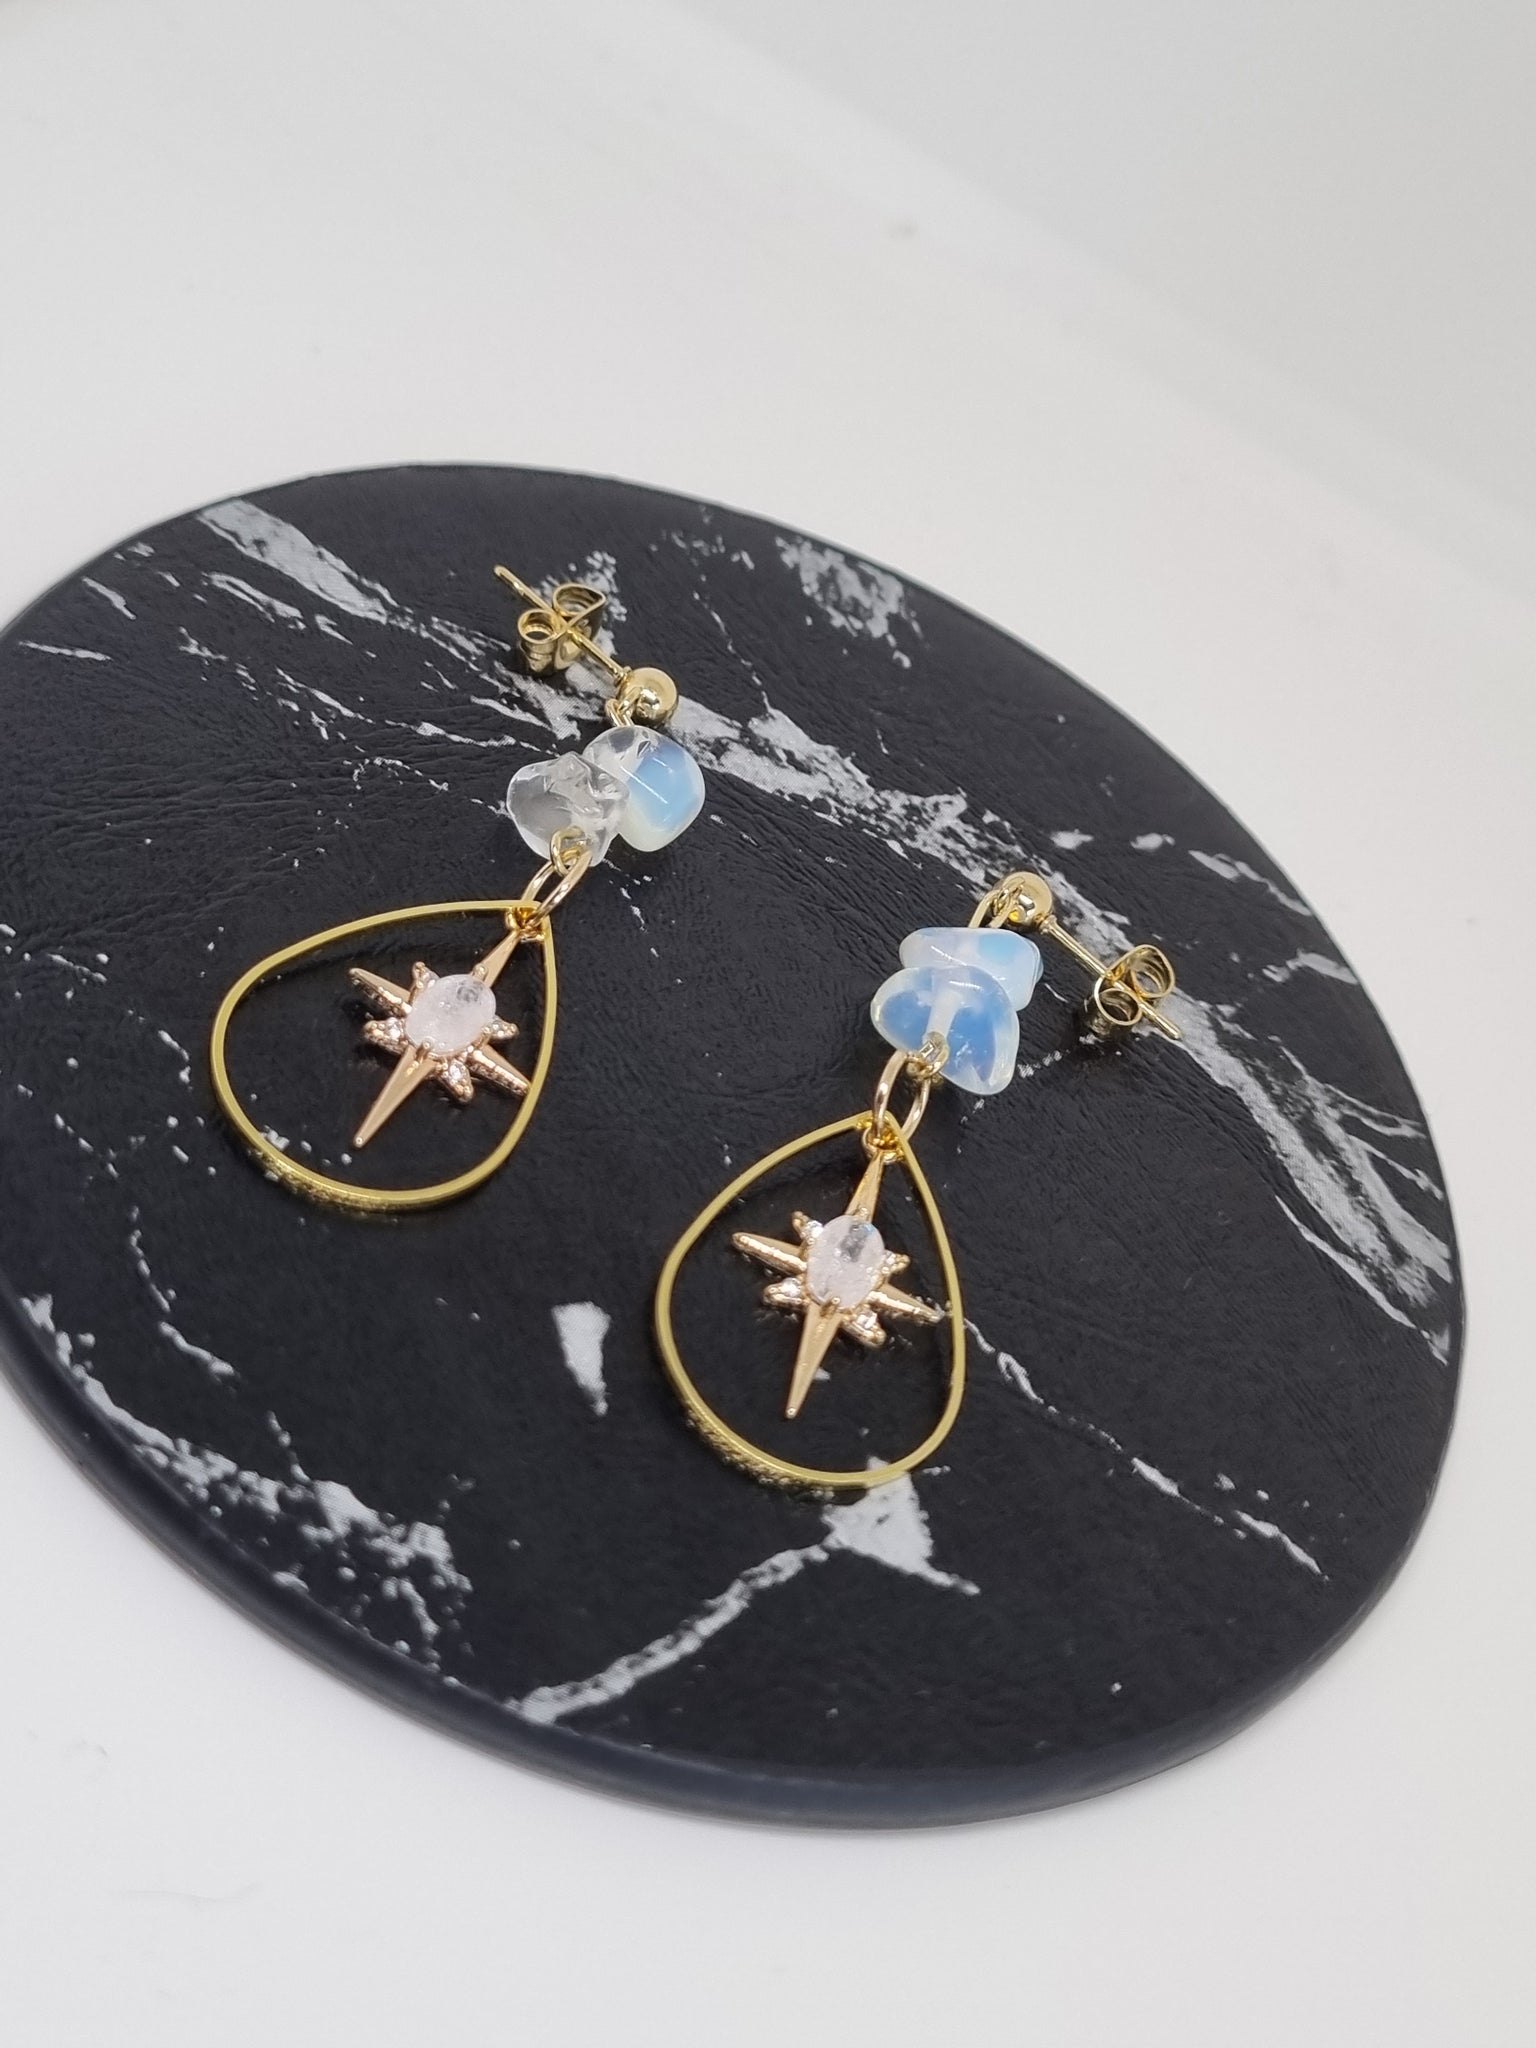 Opalite star earrings